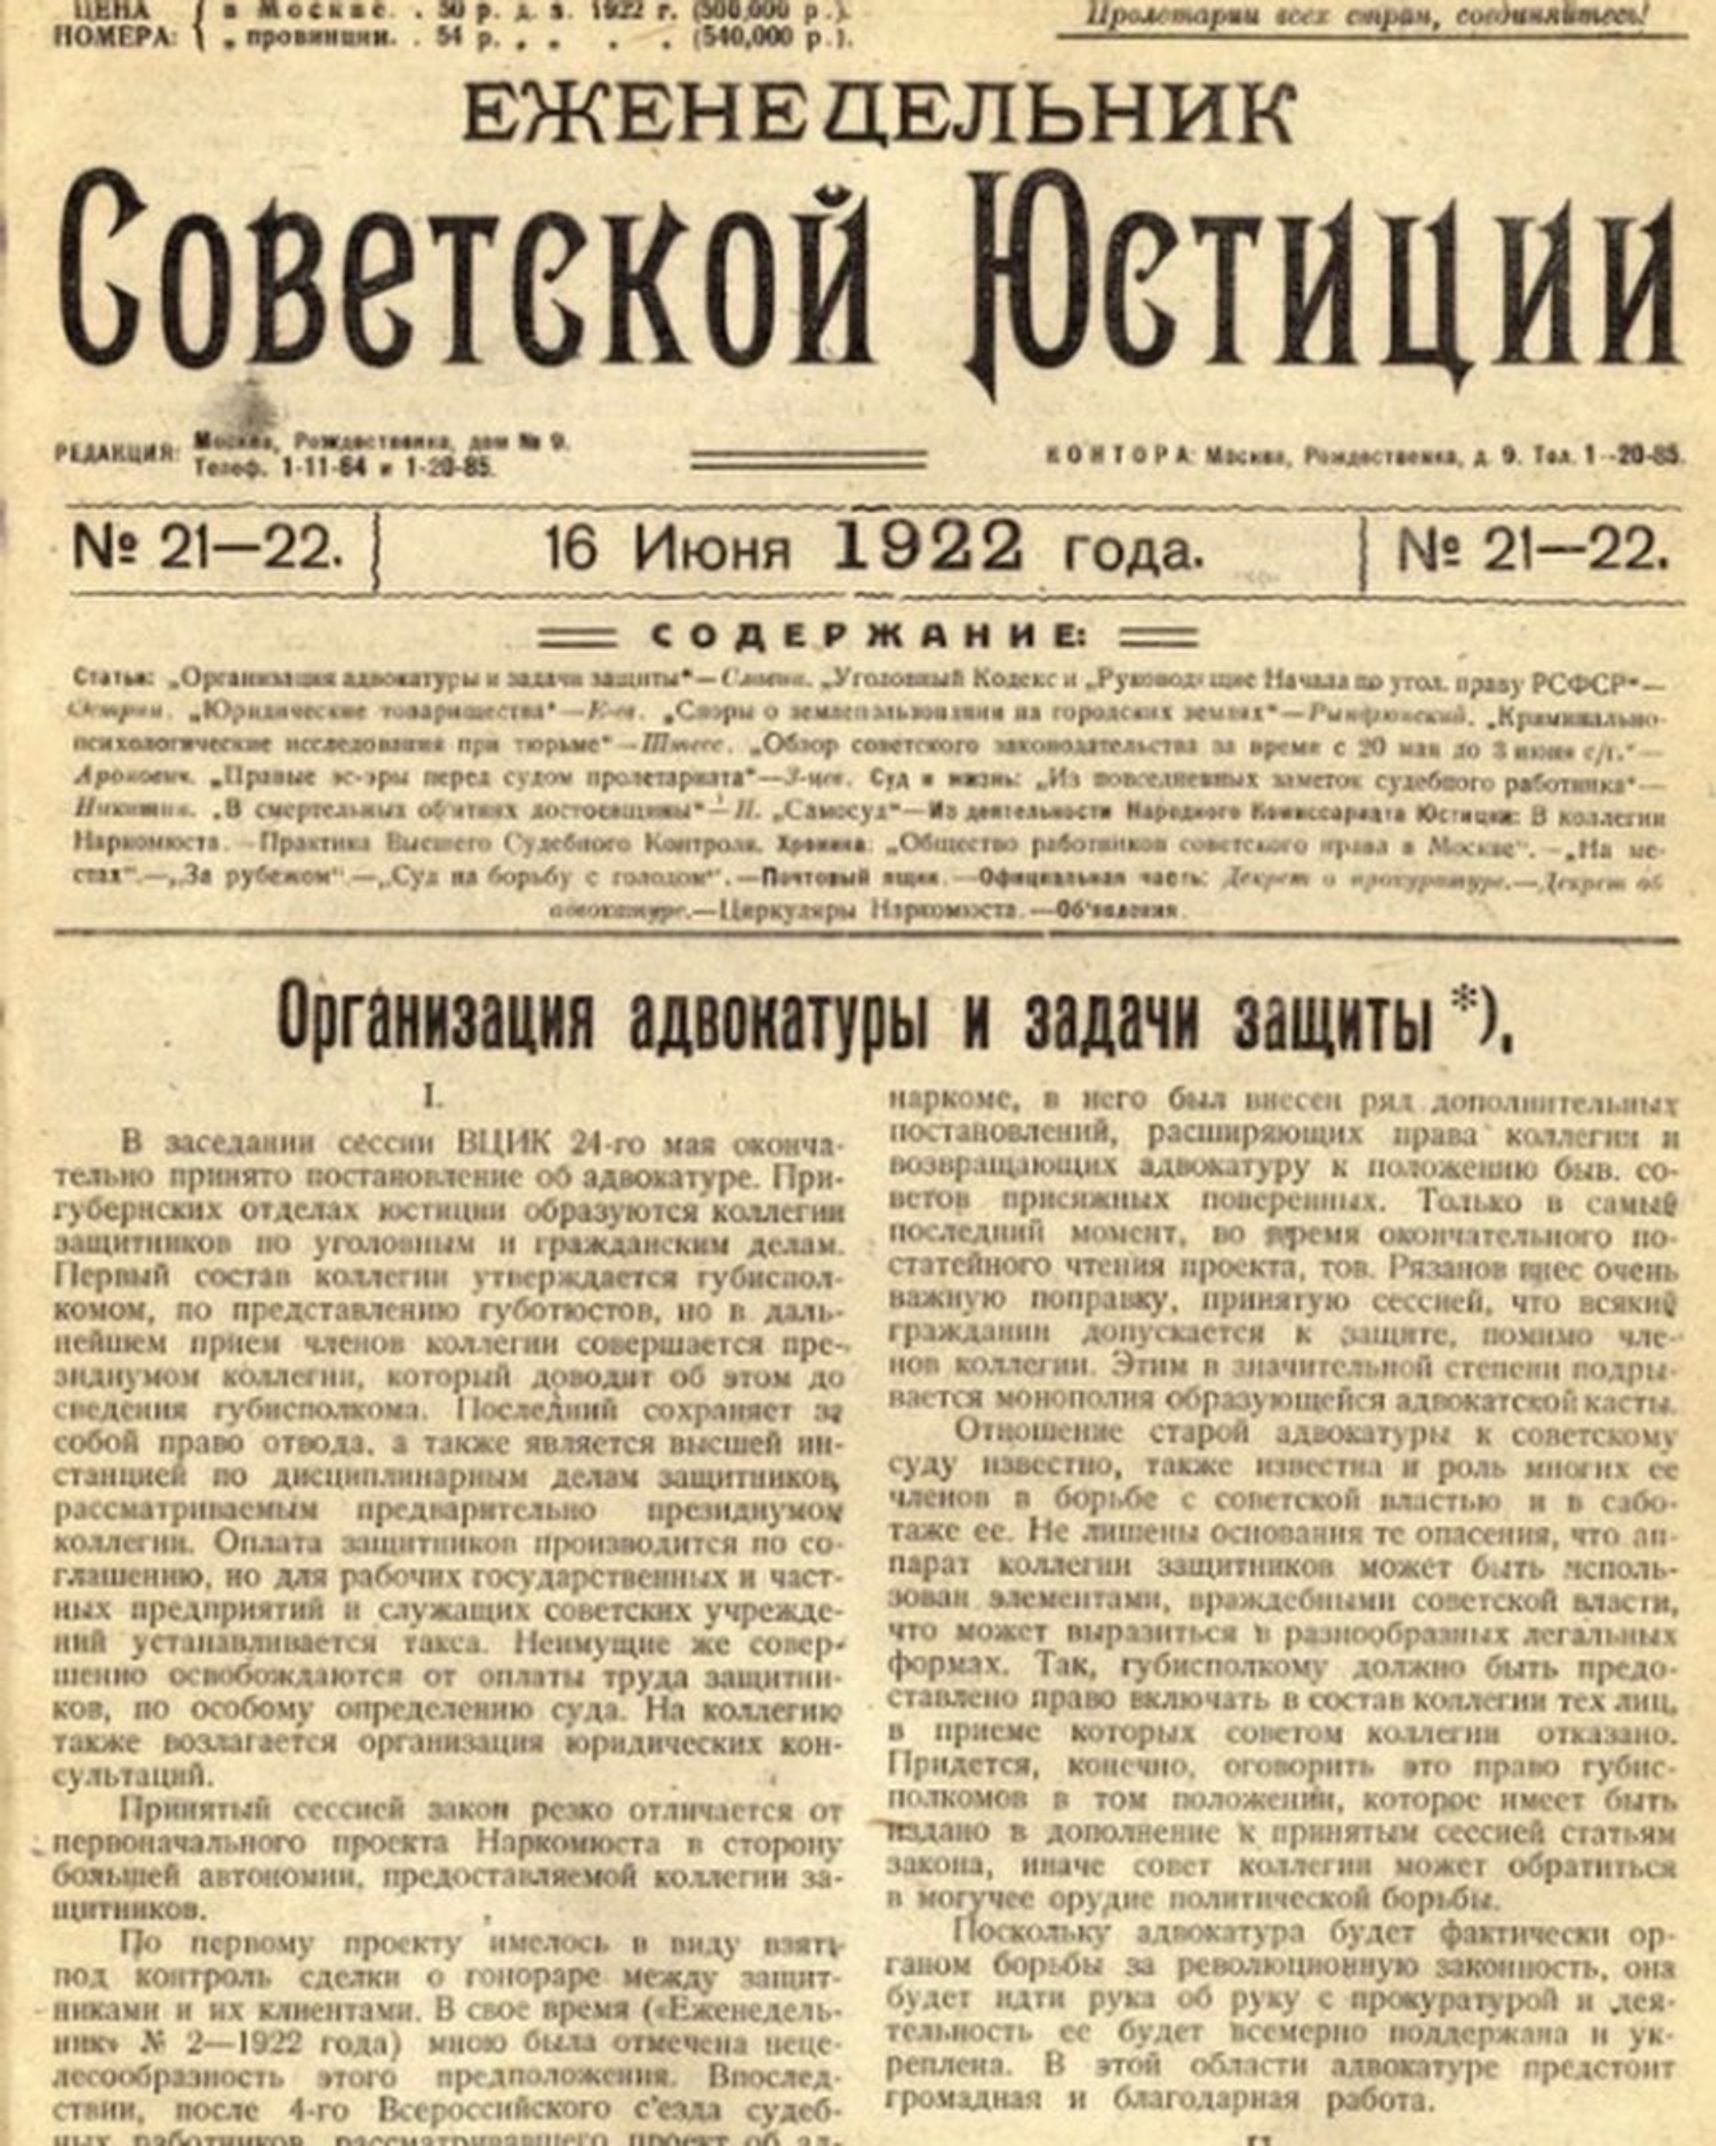 Еженедельник советской юстиции, в котором было опубликовано «Положение о коллегии защитников»